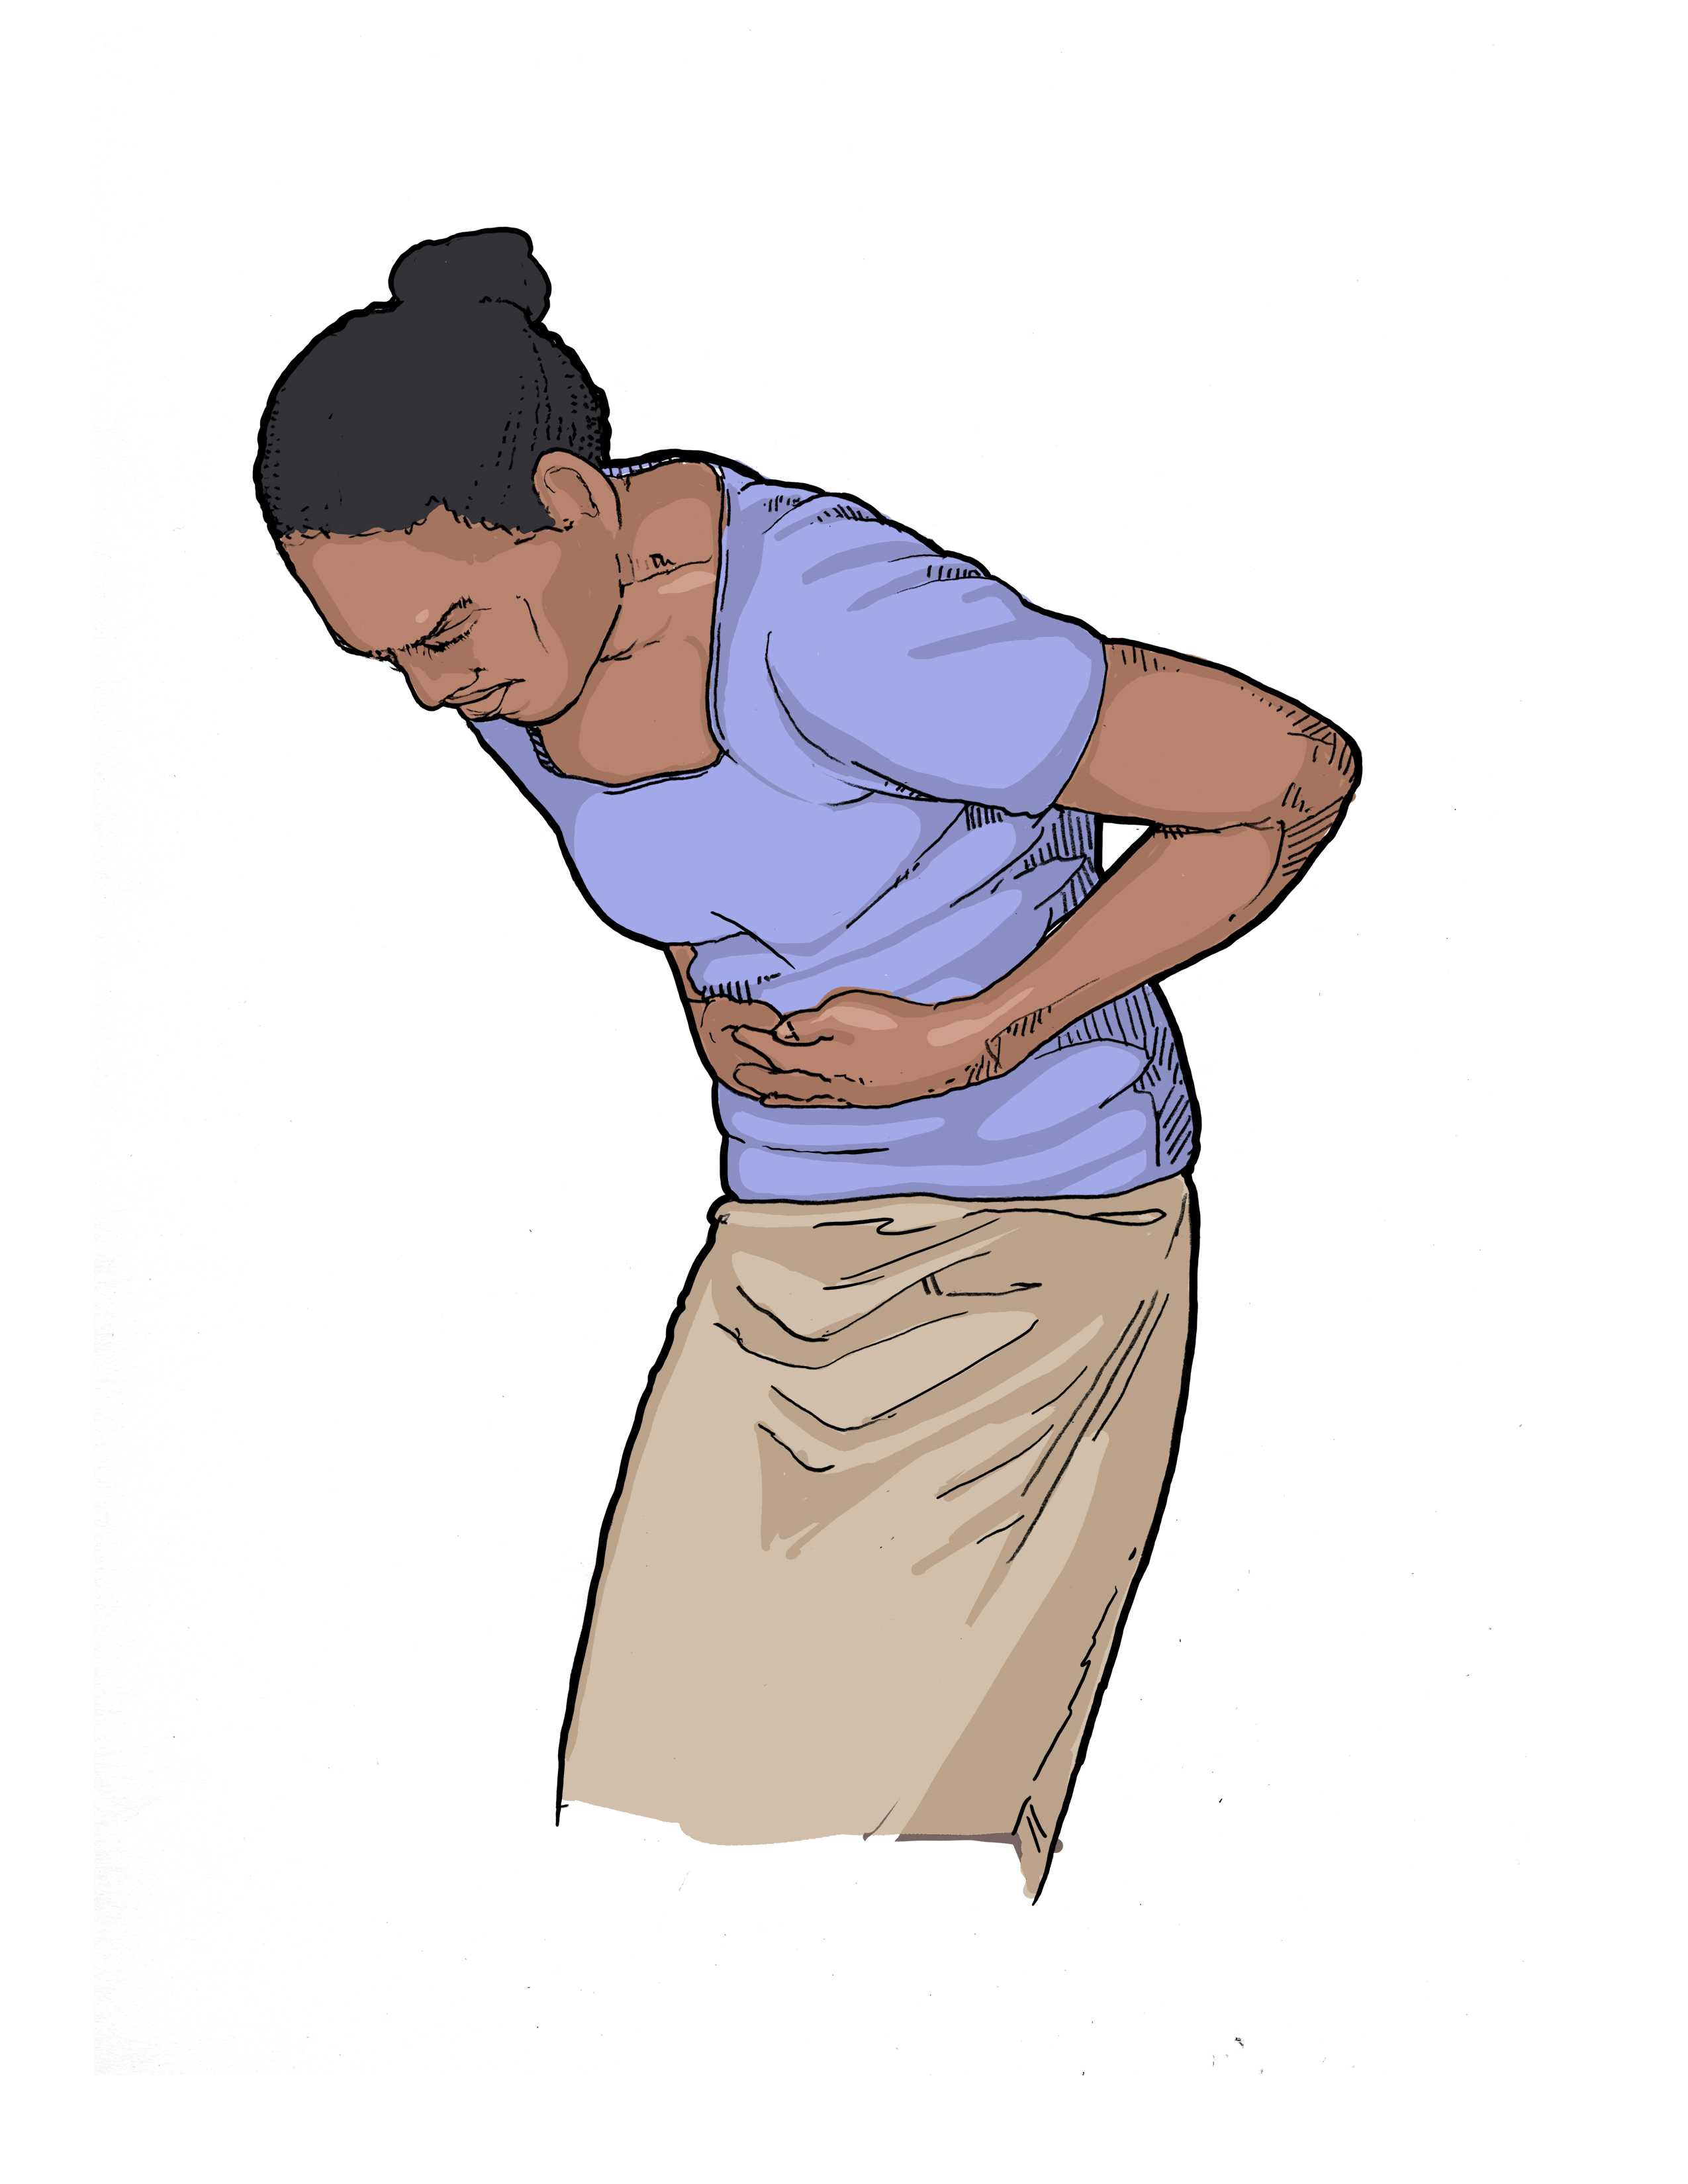 Symptoms: Stomach pain